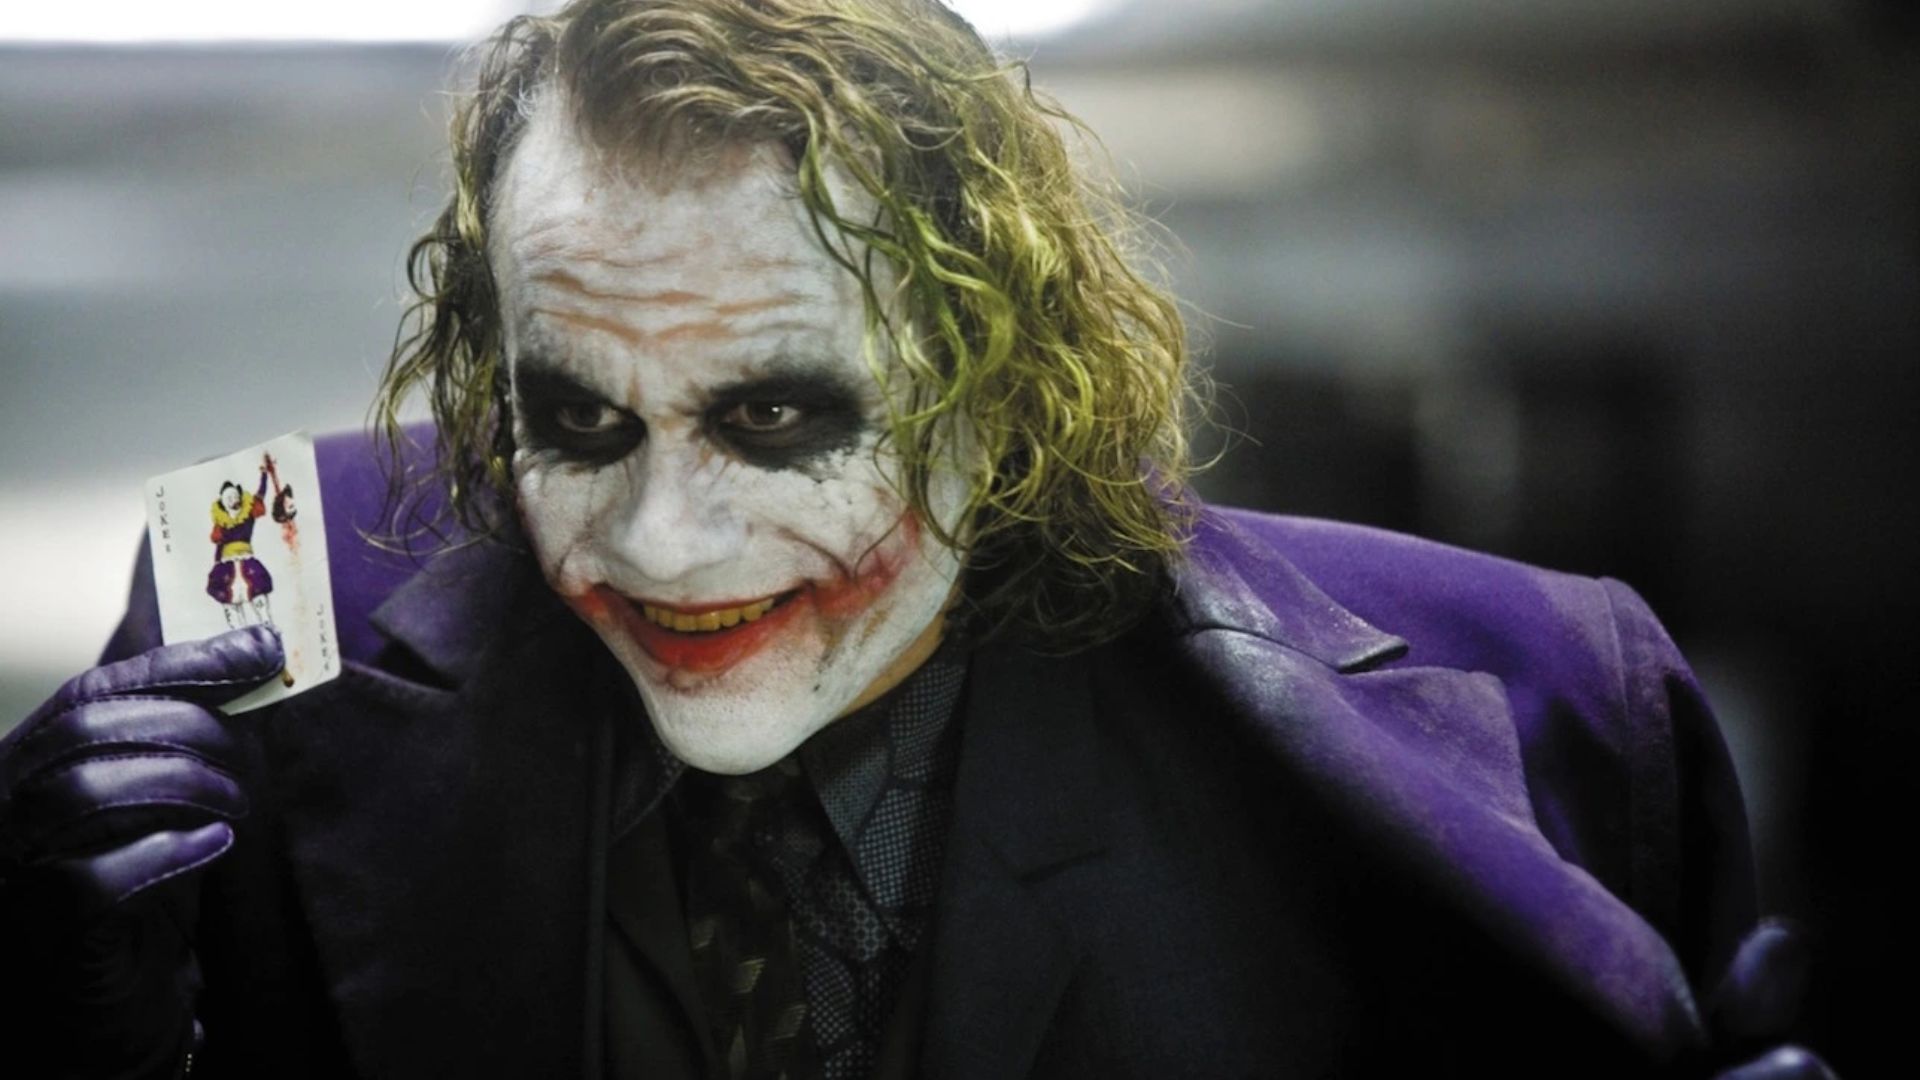 Heath Ledger Famous Joker Outfit